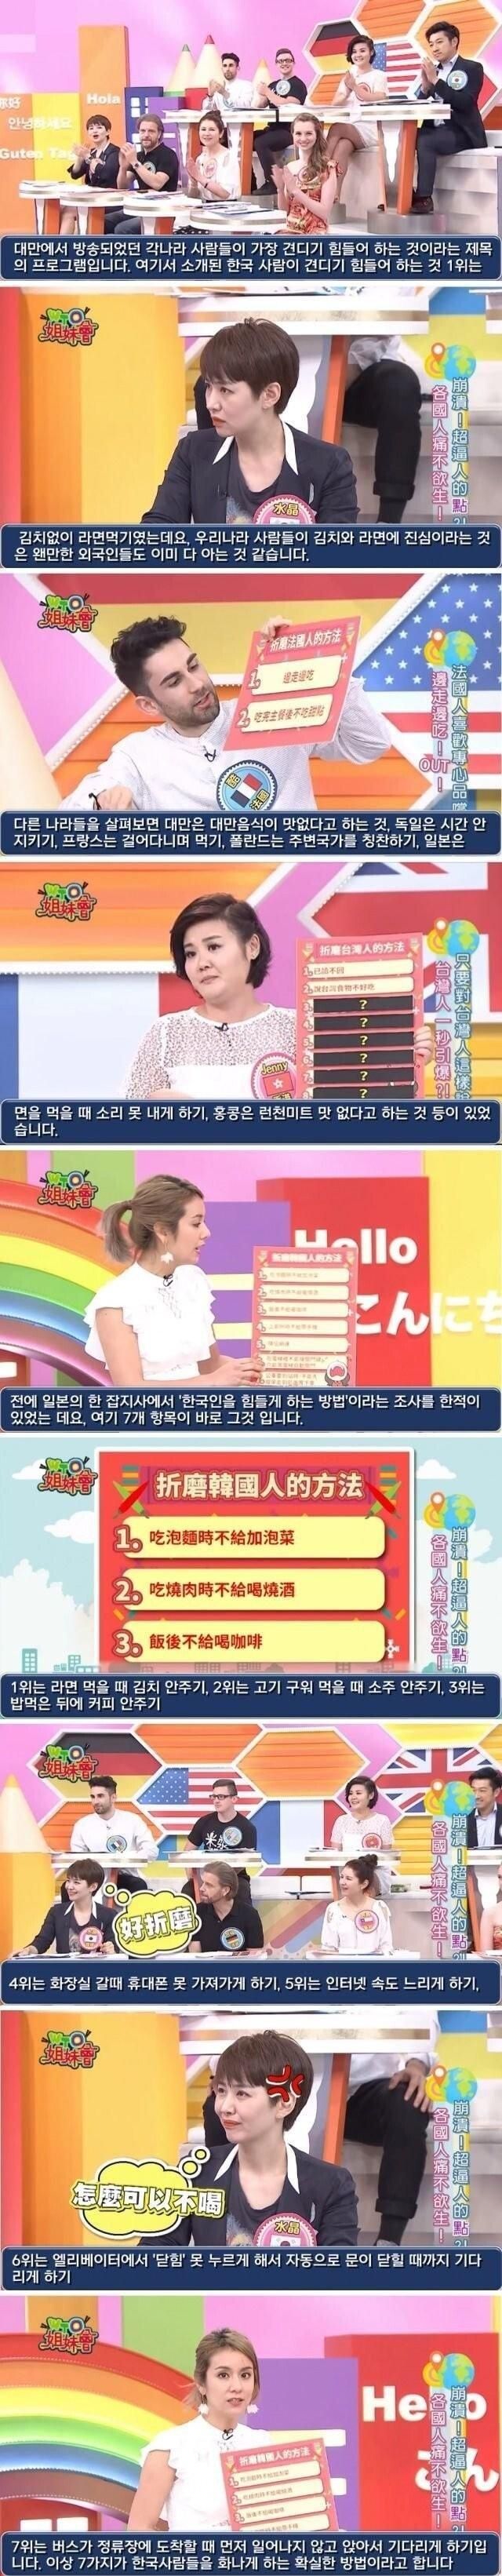 대만TV] 한국인이 견디기 힘들어 하는 것.jpg